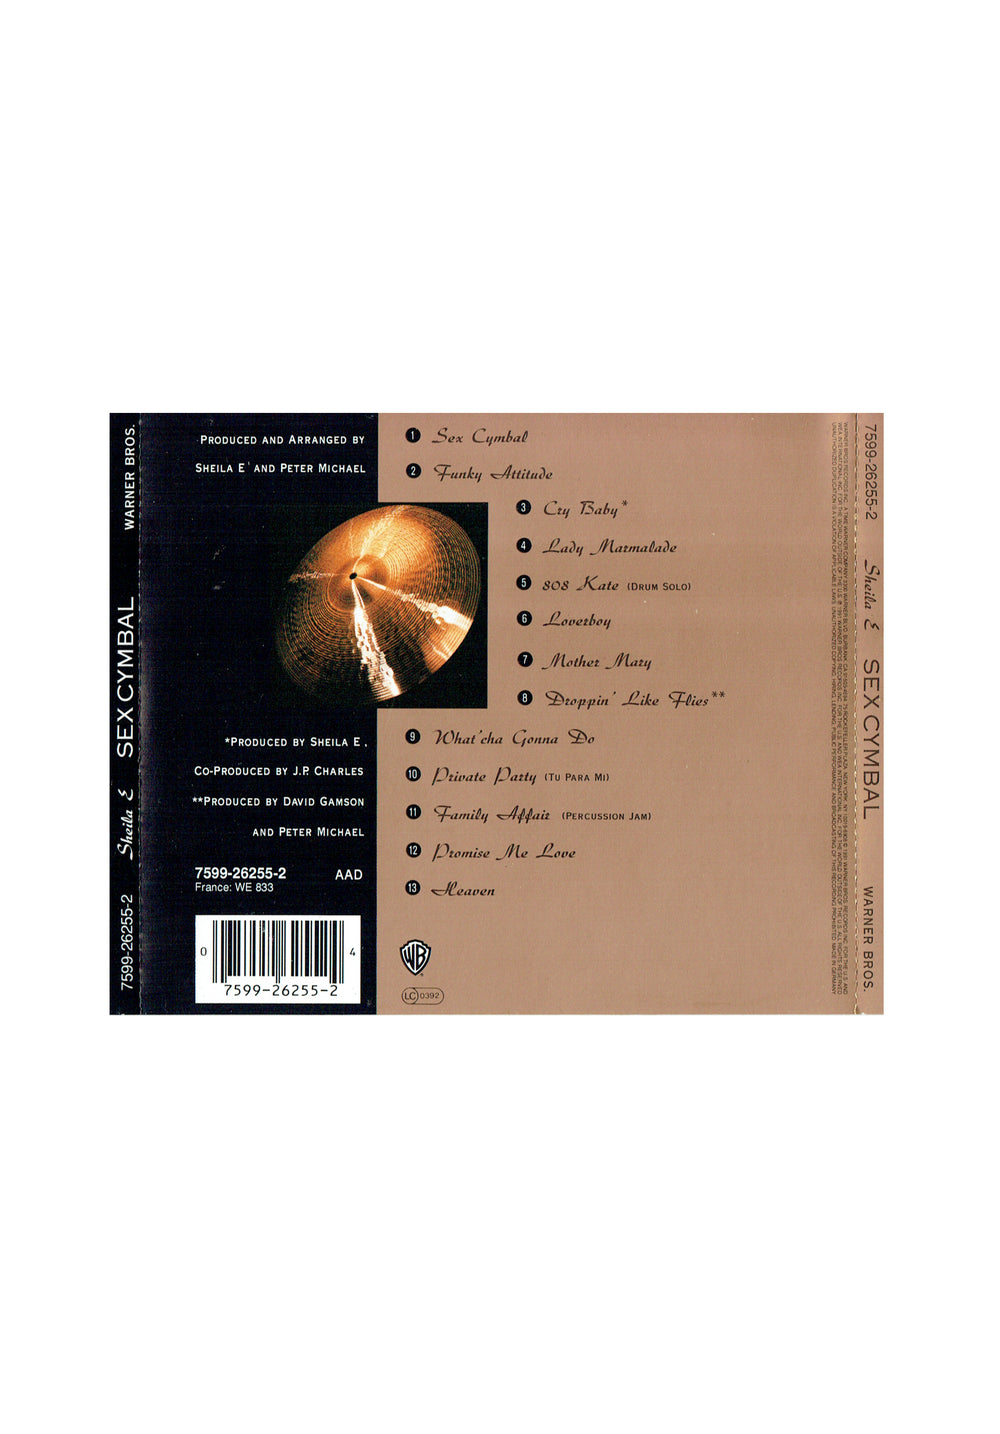 Prince – Sheila E Sex Cymbal CD Album EU Preloved: 1991